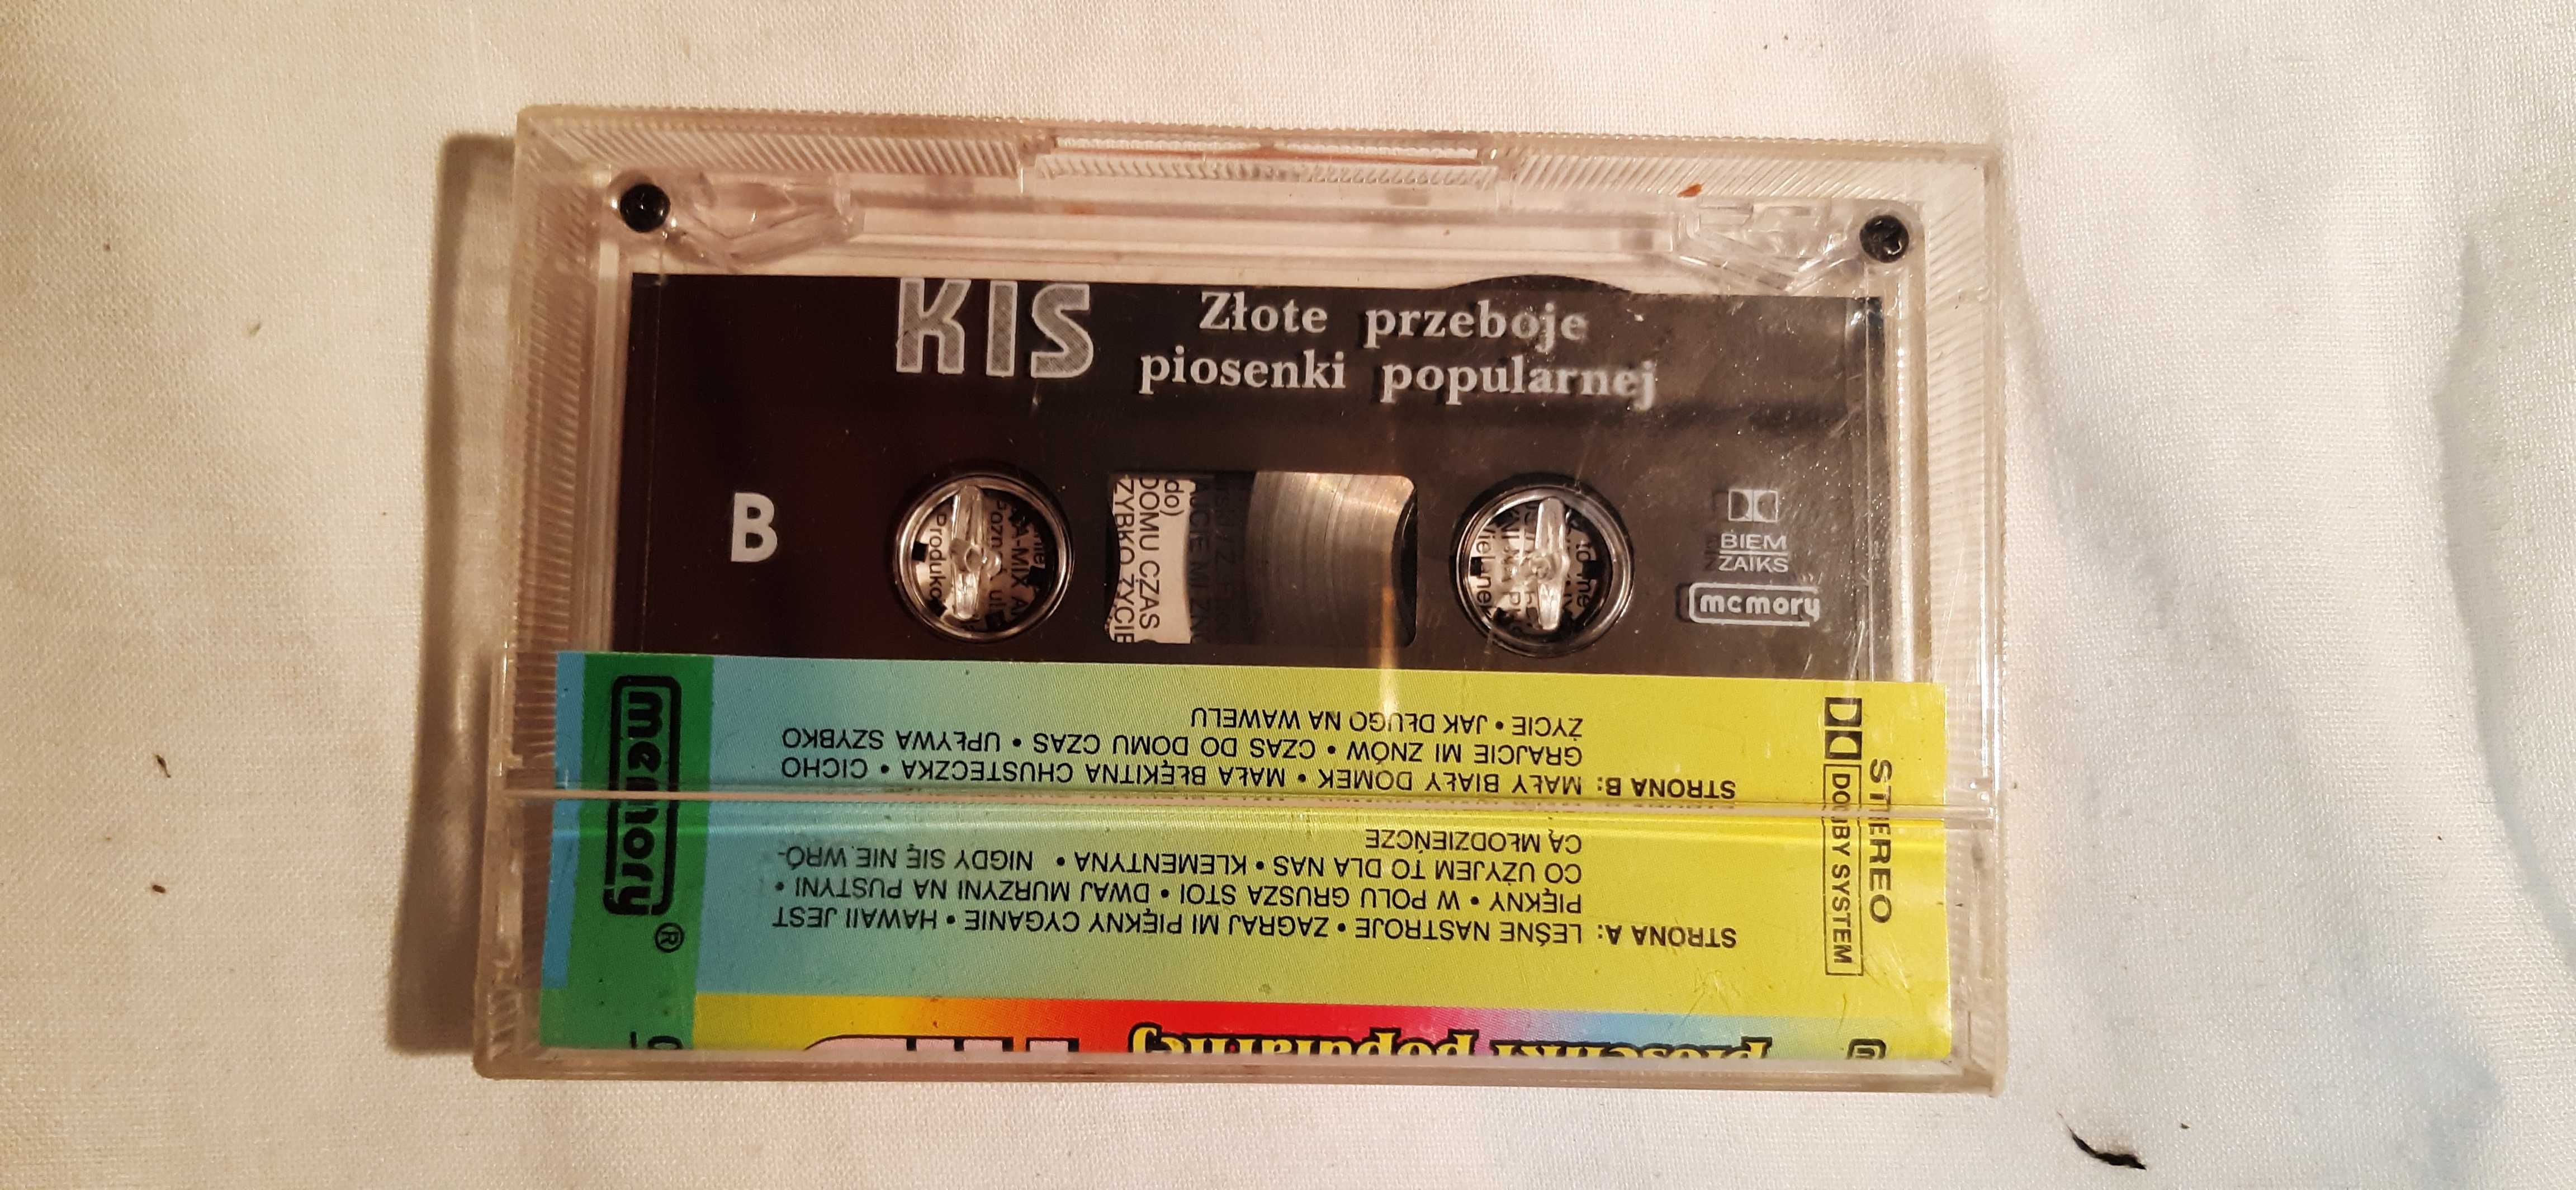 kaseta magnetofonowa KIS przeboje muzyki popularnej